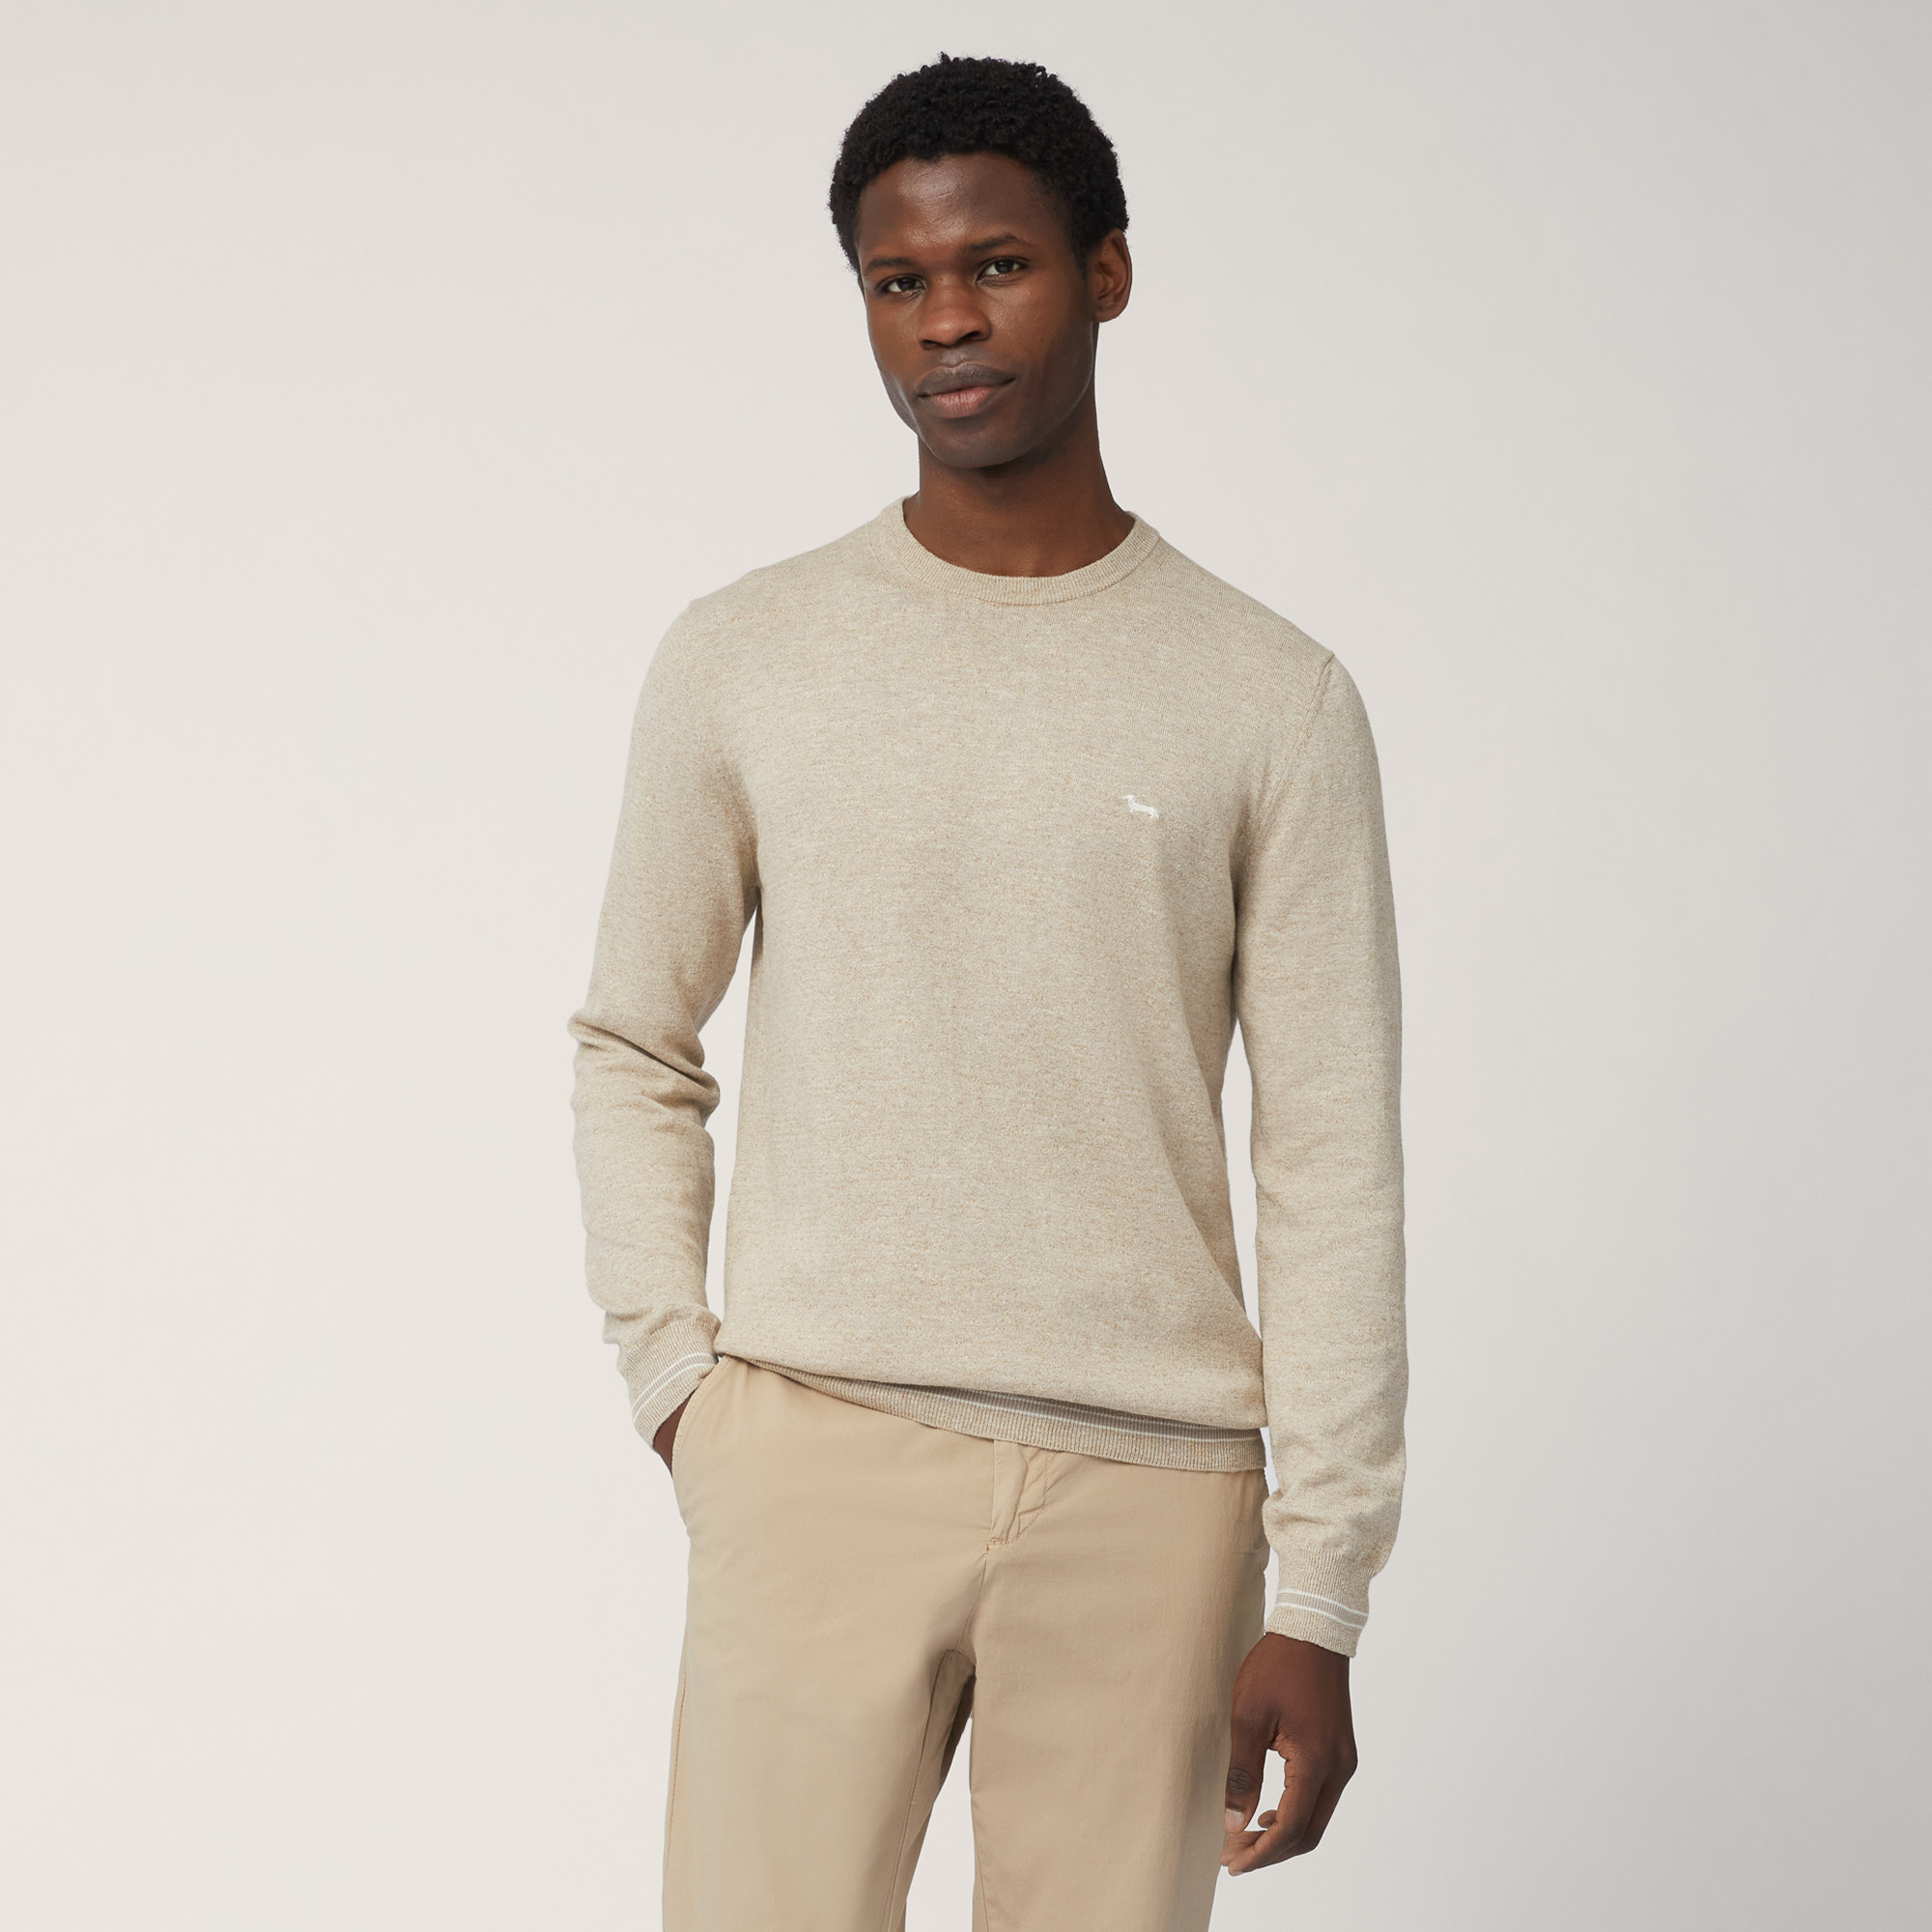 Pullover Mit Streifen-Details, Gelb, large